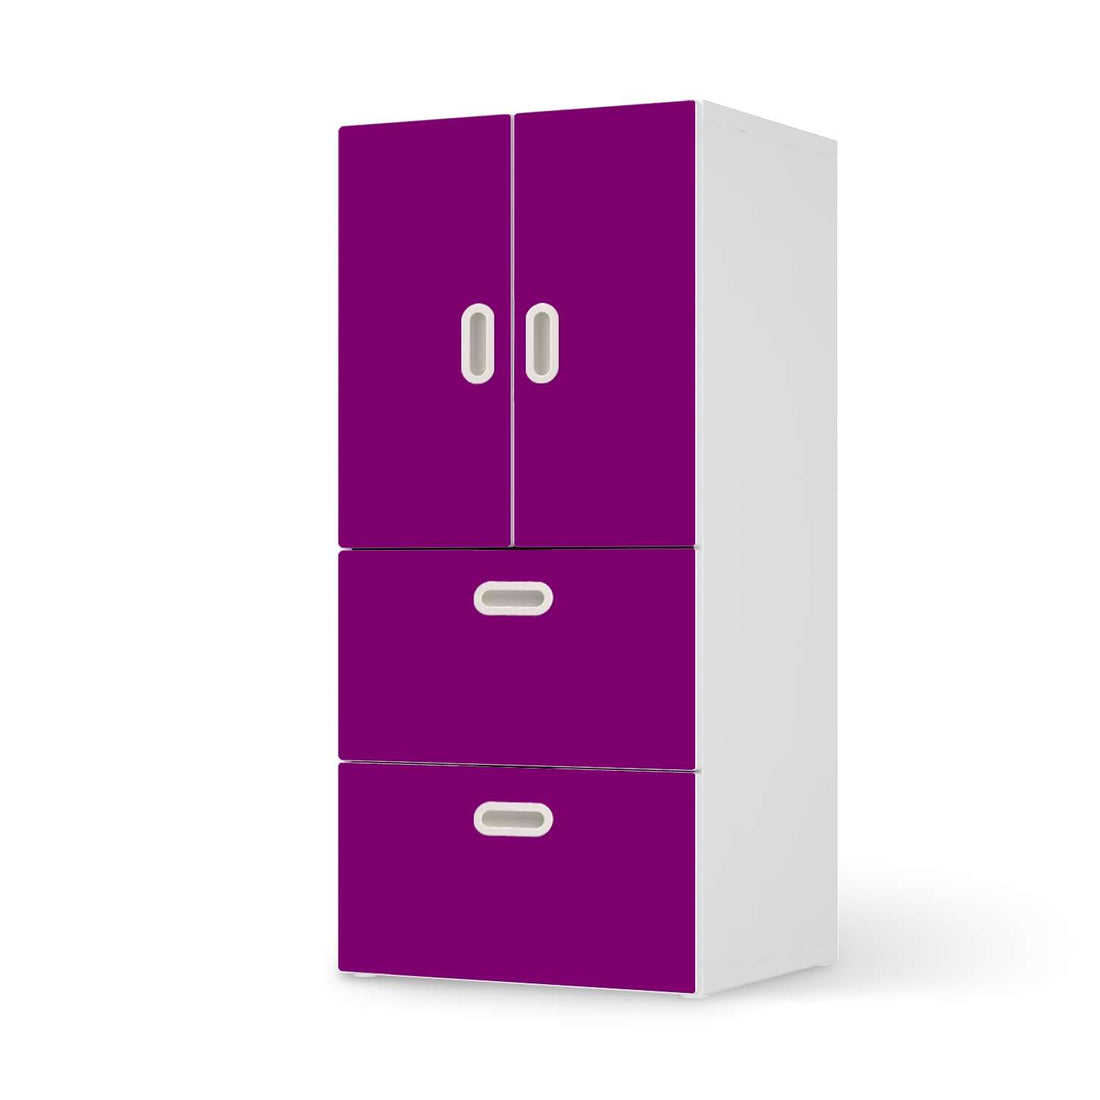 Möbelfolie Flieder Dark - IKEA Stuva / Fritids kombiniert - 2 Schubladen und 2 kleine Türen  - weiss